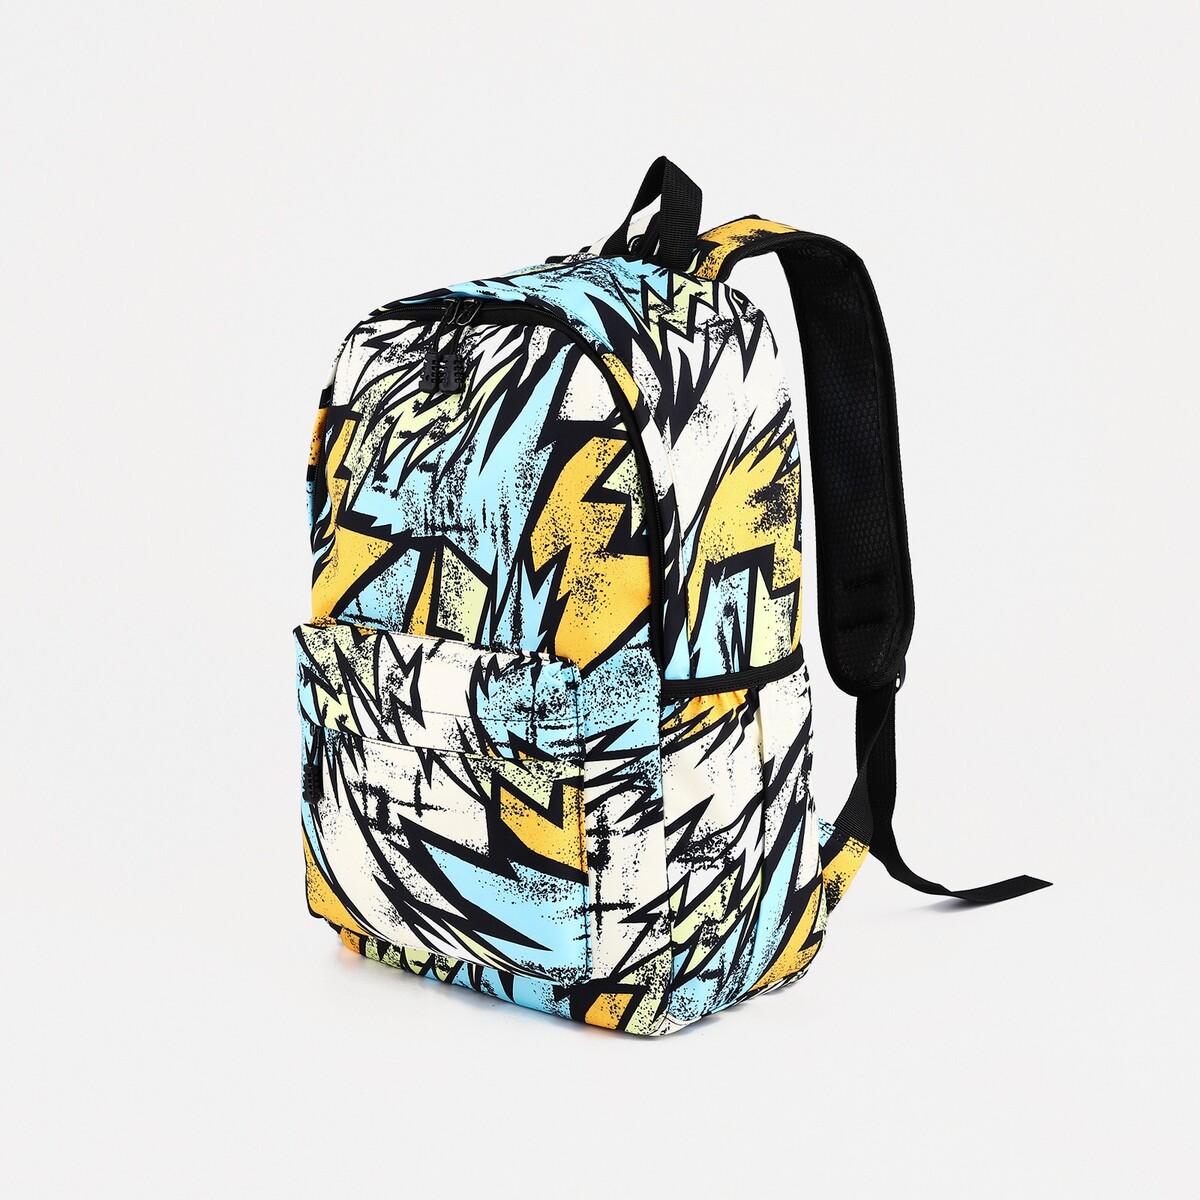 Рюкзак школьный из текстиля на молнии, 3 кармана, цвет желтый/разноцветный